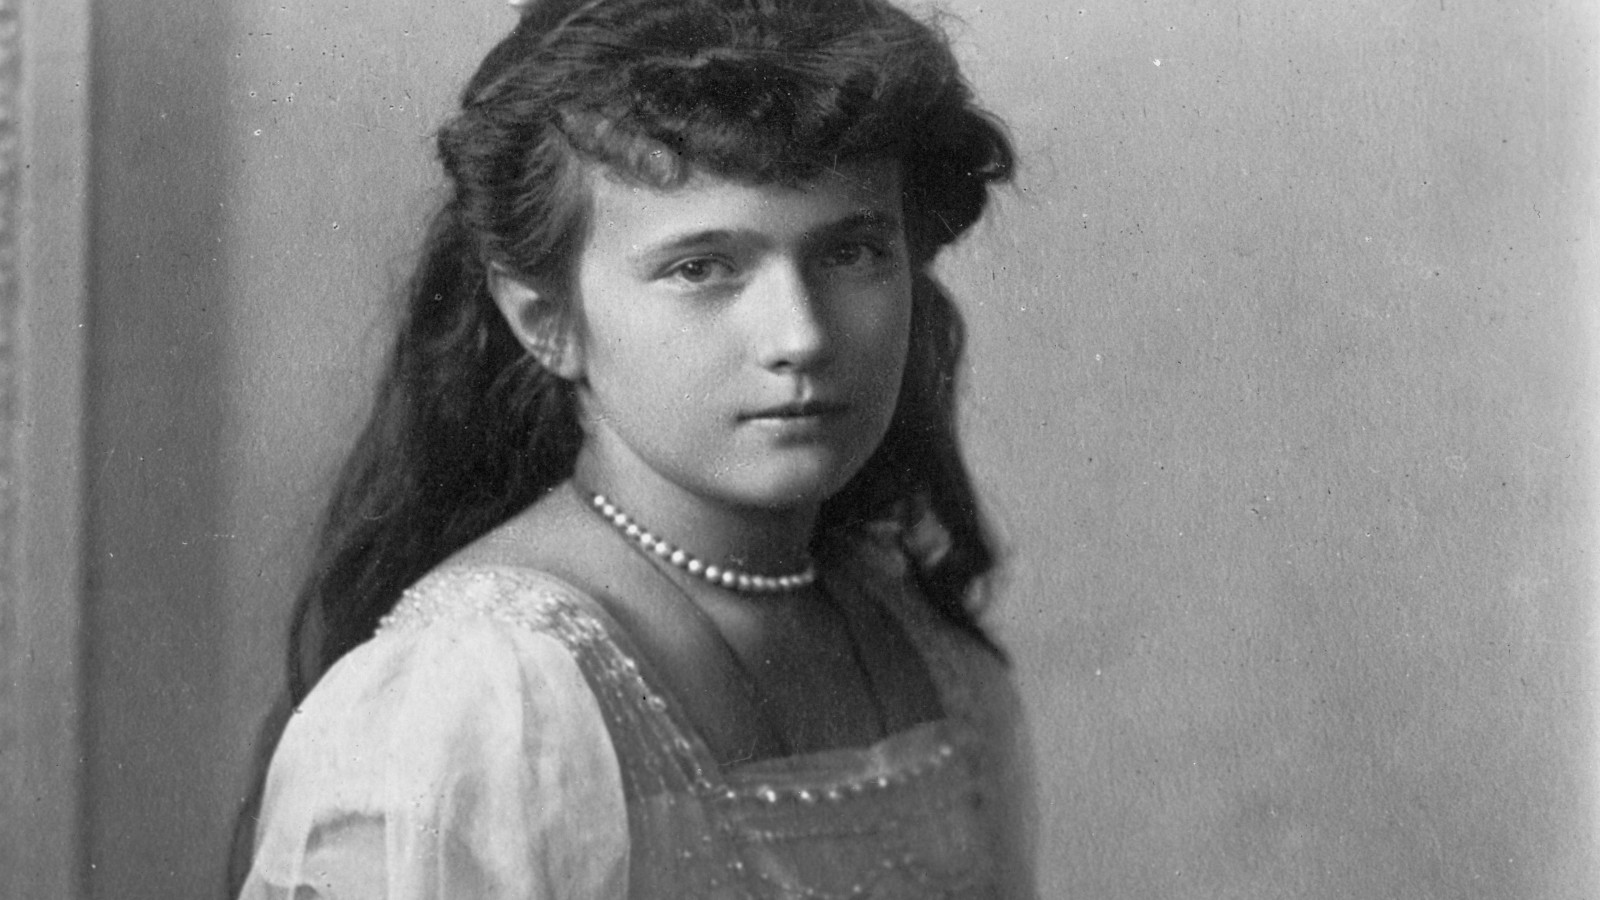 Anastasia oli Venäjän keisari Nikolain nuorin tytär, joka oli syntynyt 18.6.1901 ja kuoli 18.7.1918, kun koko tsaariperhe murhattiin.